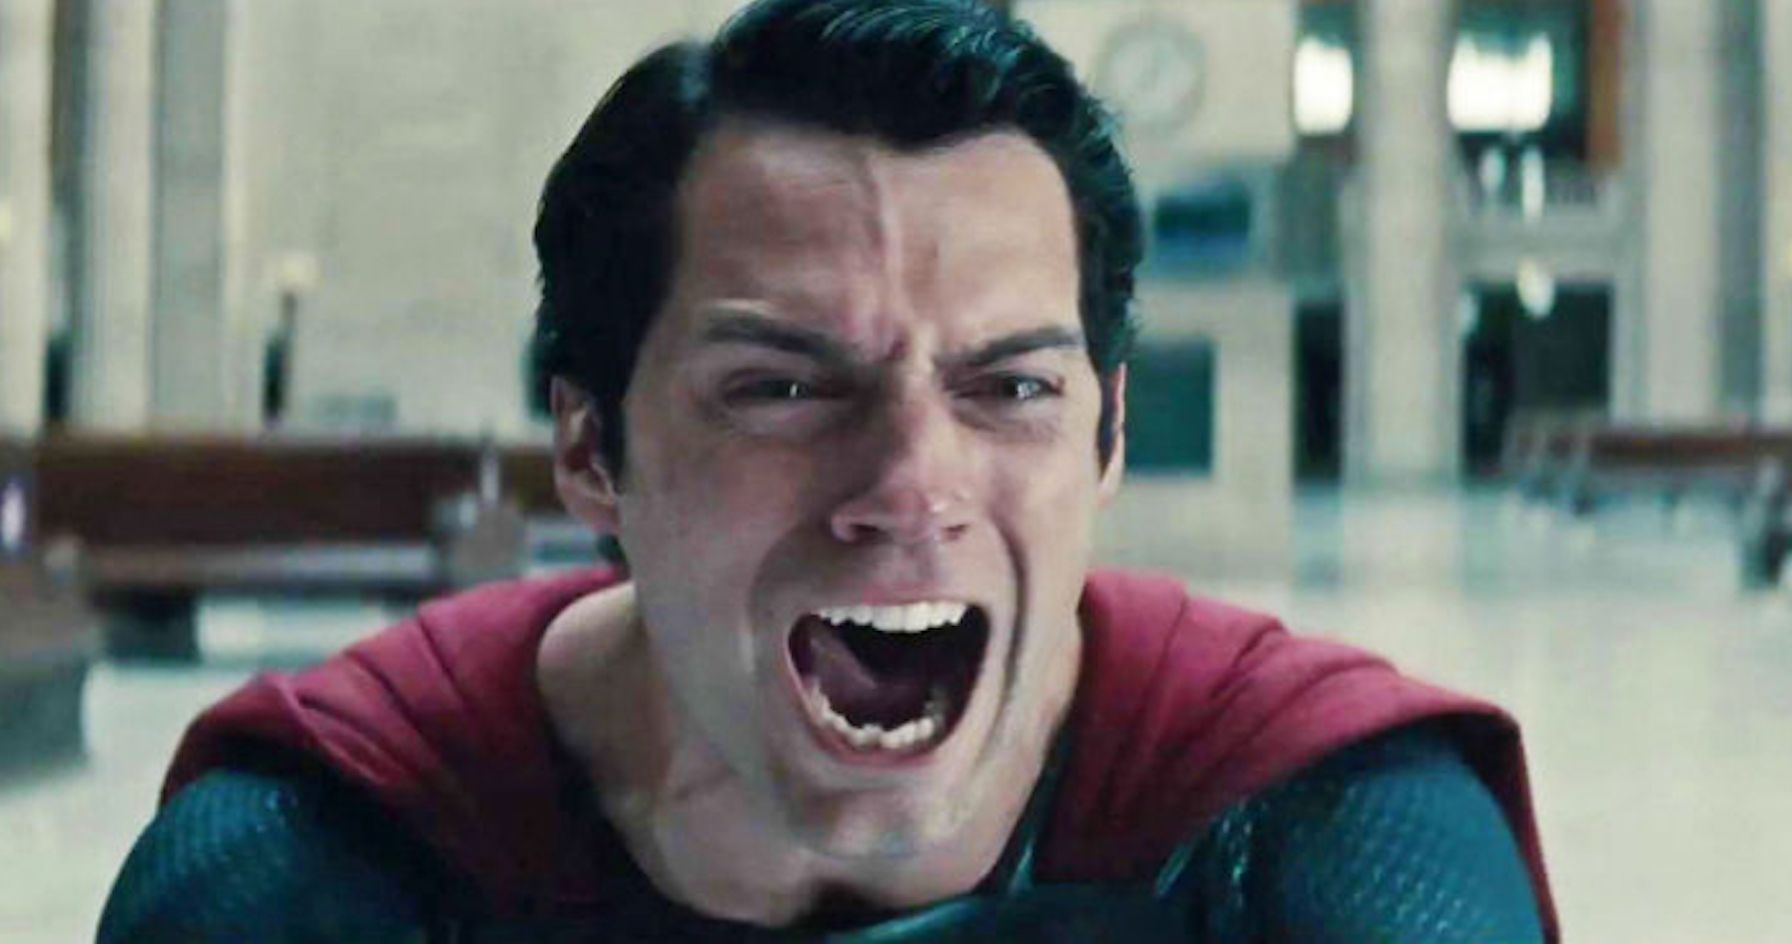 Superman Reboot News Has Henry Cavill Fans Bummed Out